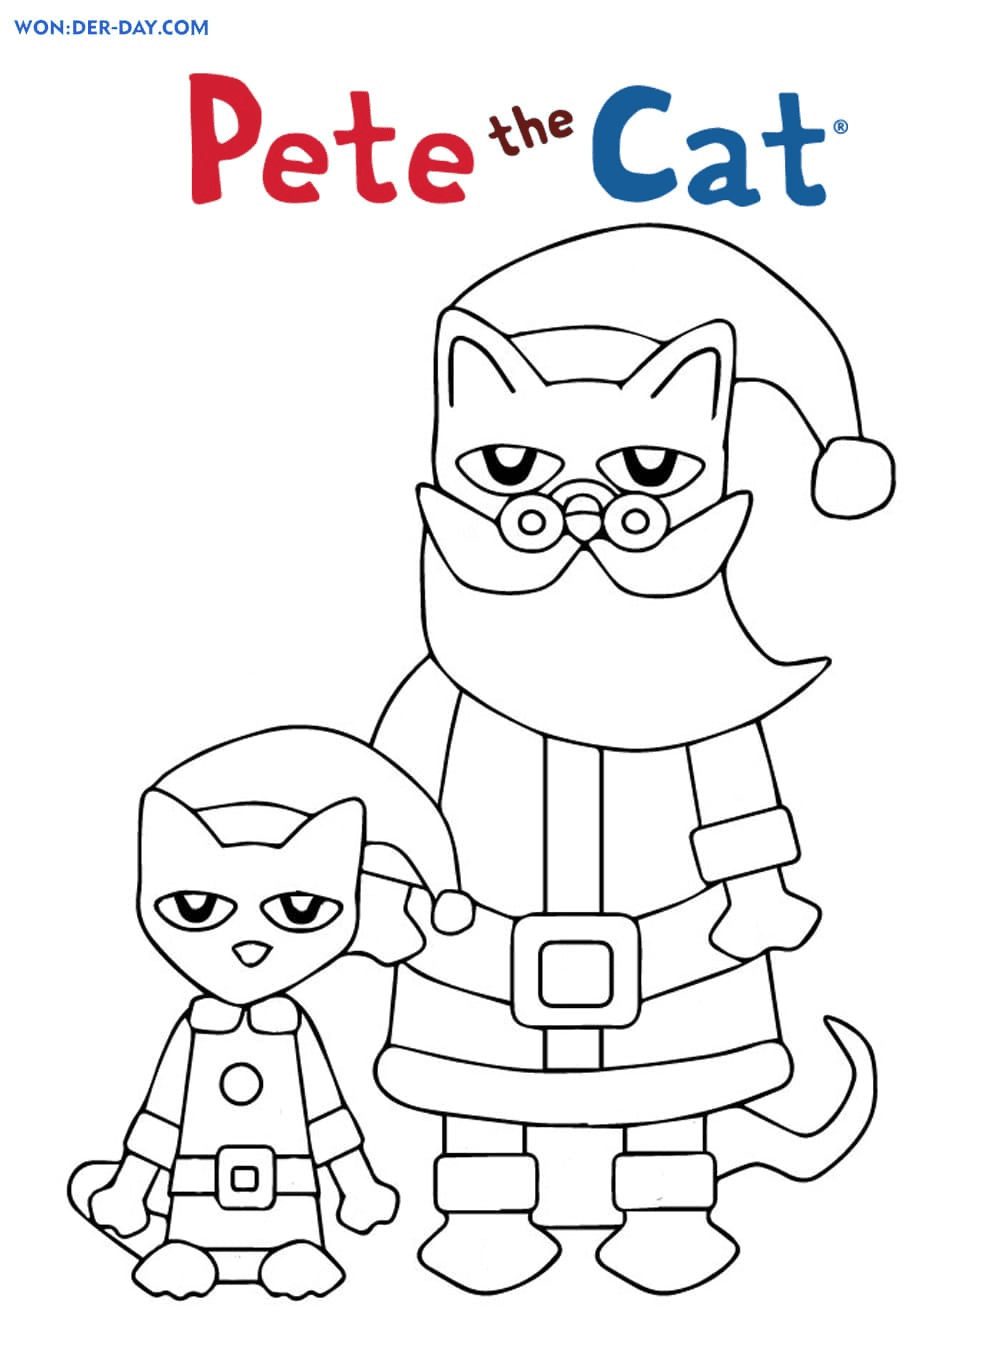 Pete de Kat en de Kerstman van Pete The Cat